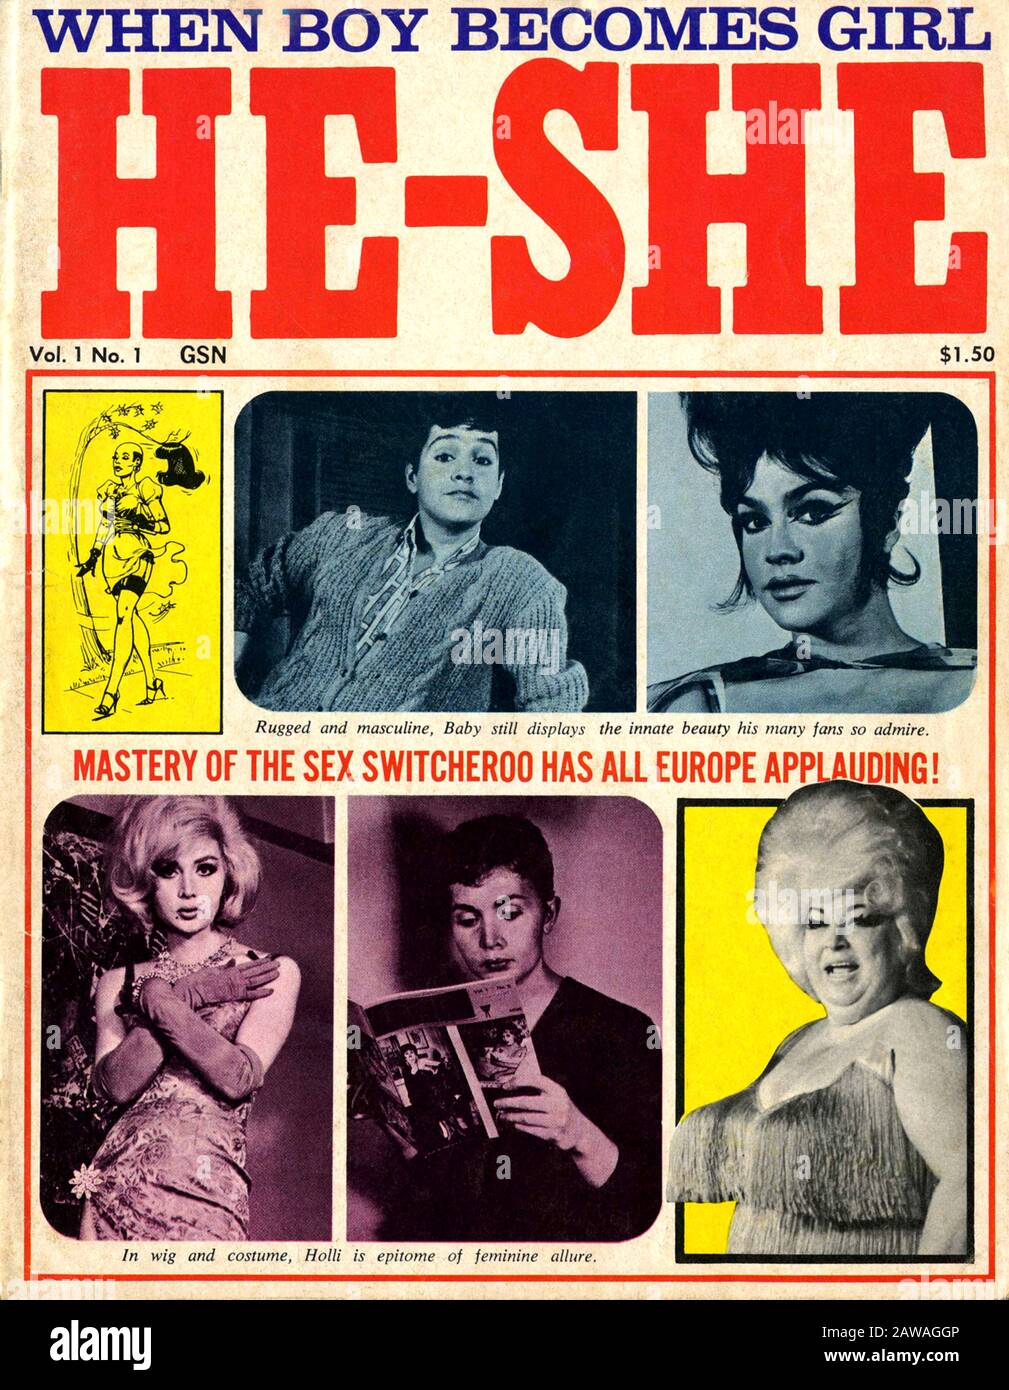 1966, USA: Die pionierische US-amerikanische Zeitschrift HE-SHE ( When Boy Becomes Girl ) Nr. 1, 1966, die sich den Liebhabern von Transvesti widmet Stockfoto